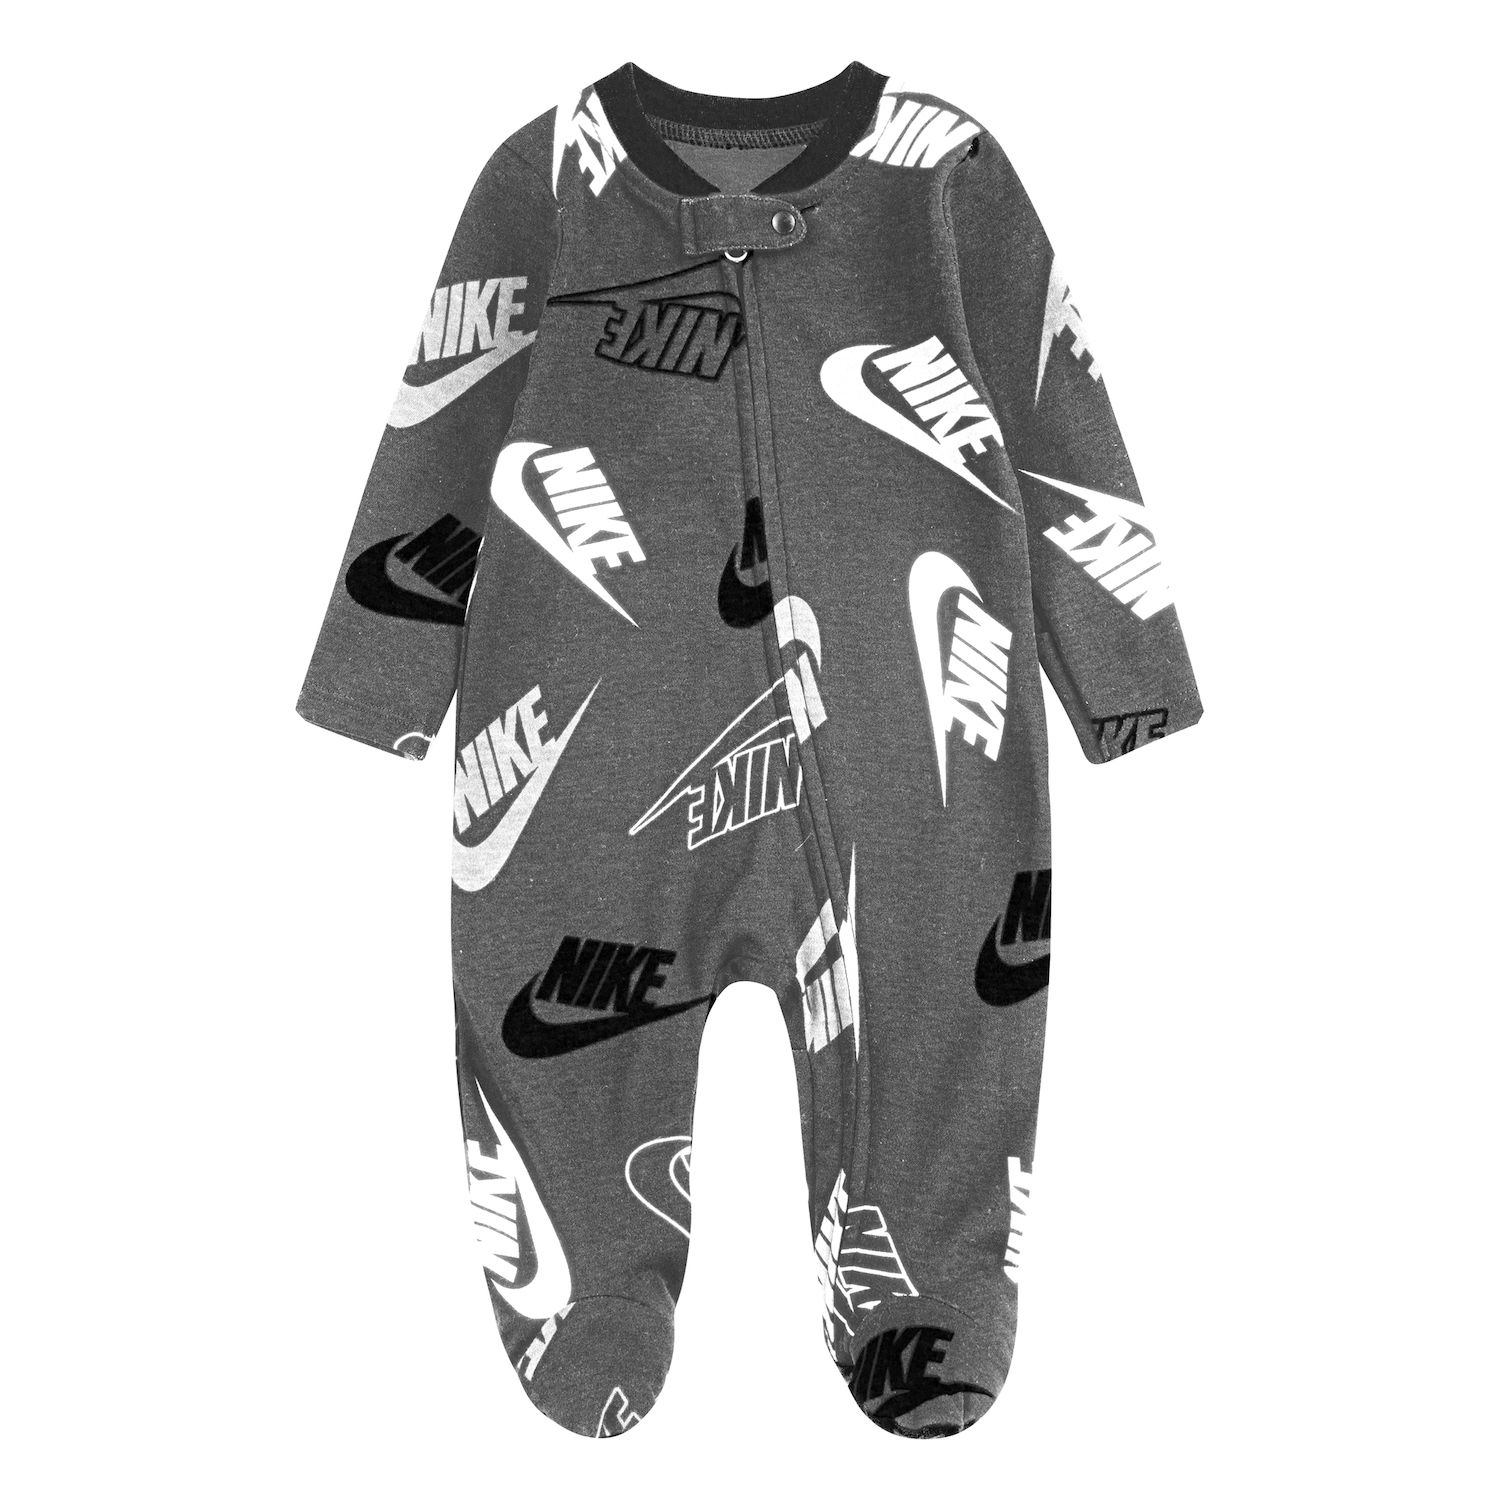 nike jogging suit for infants